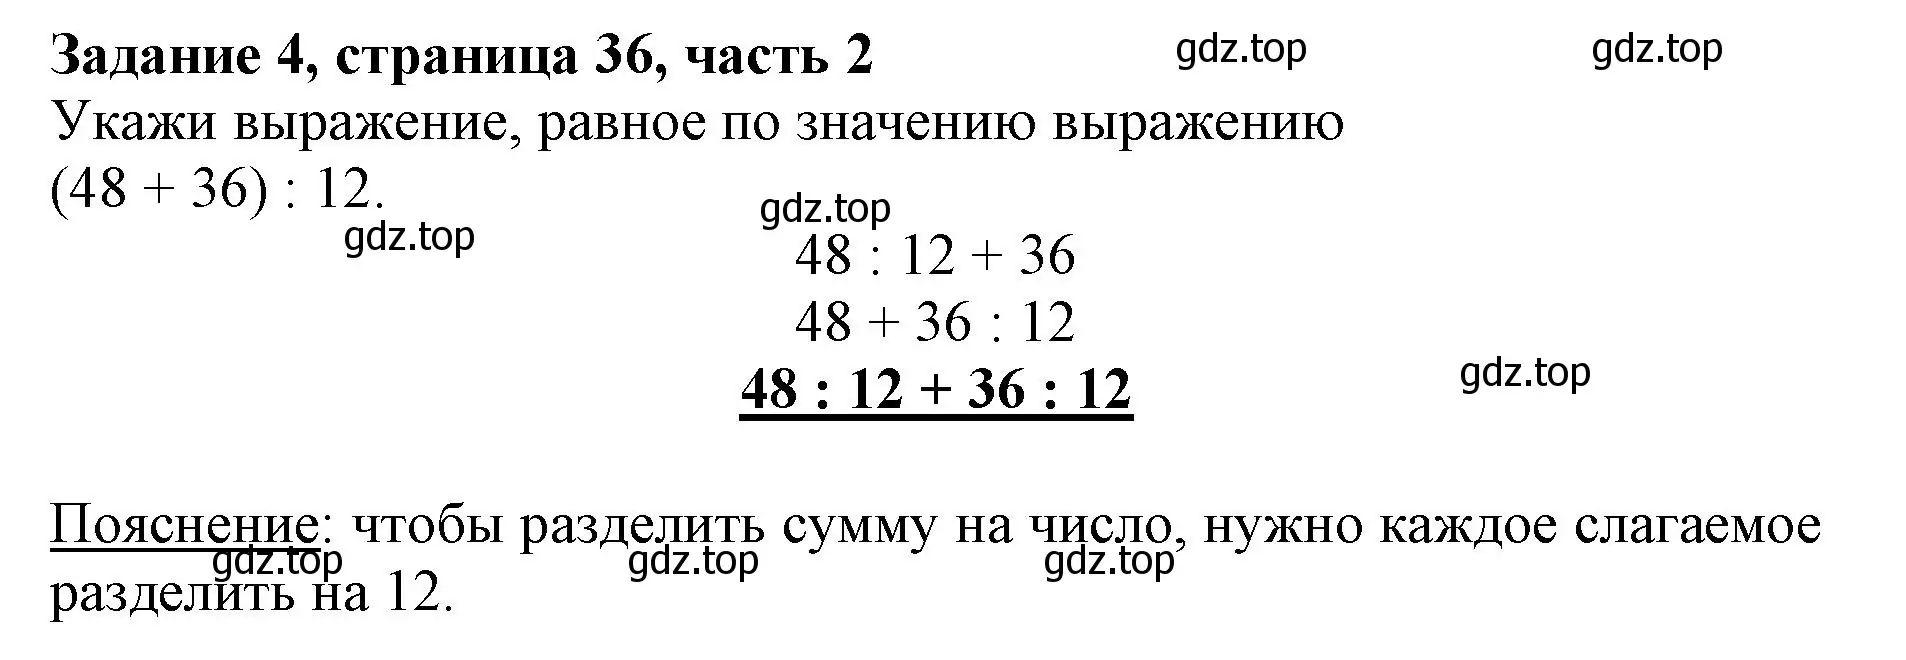 Решение номер 4 (страница 36) гдз по математике 3 класс Моро, Бантова, учебник 2 часть